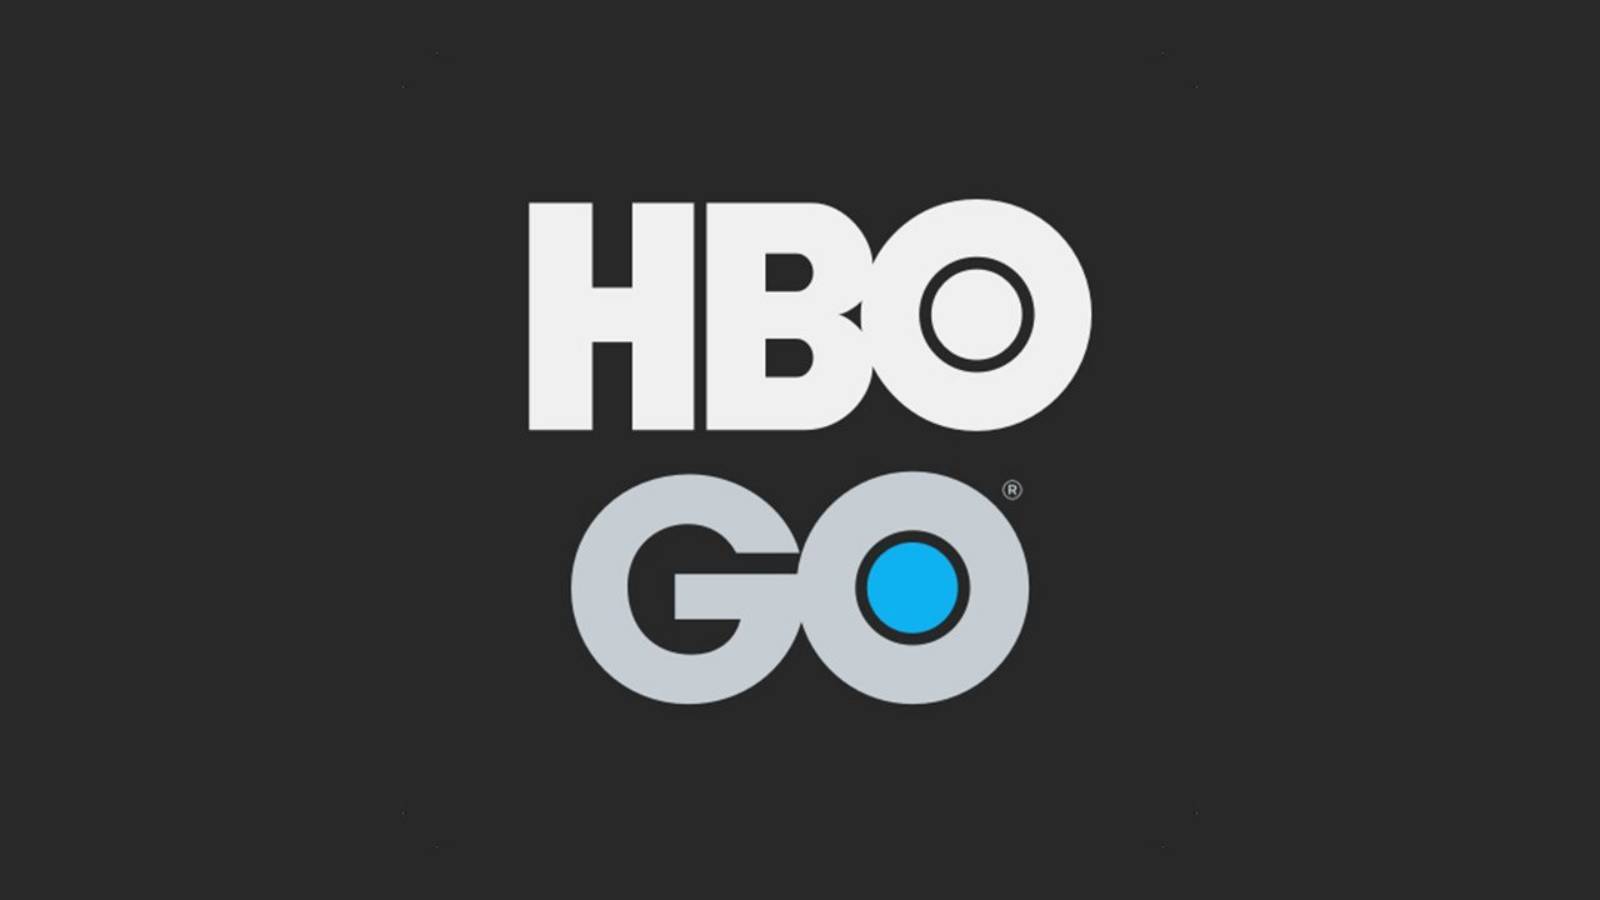 HBO Go lanceres